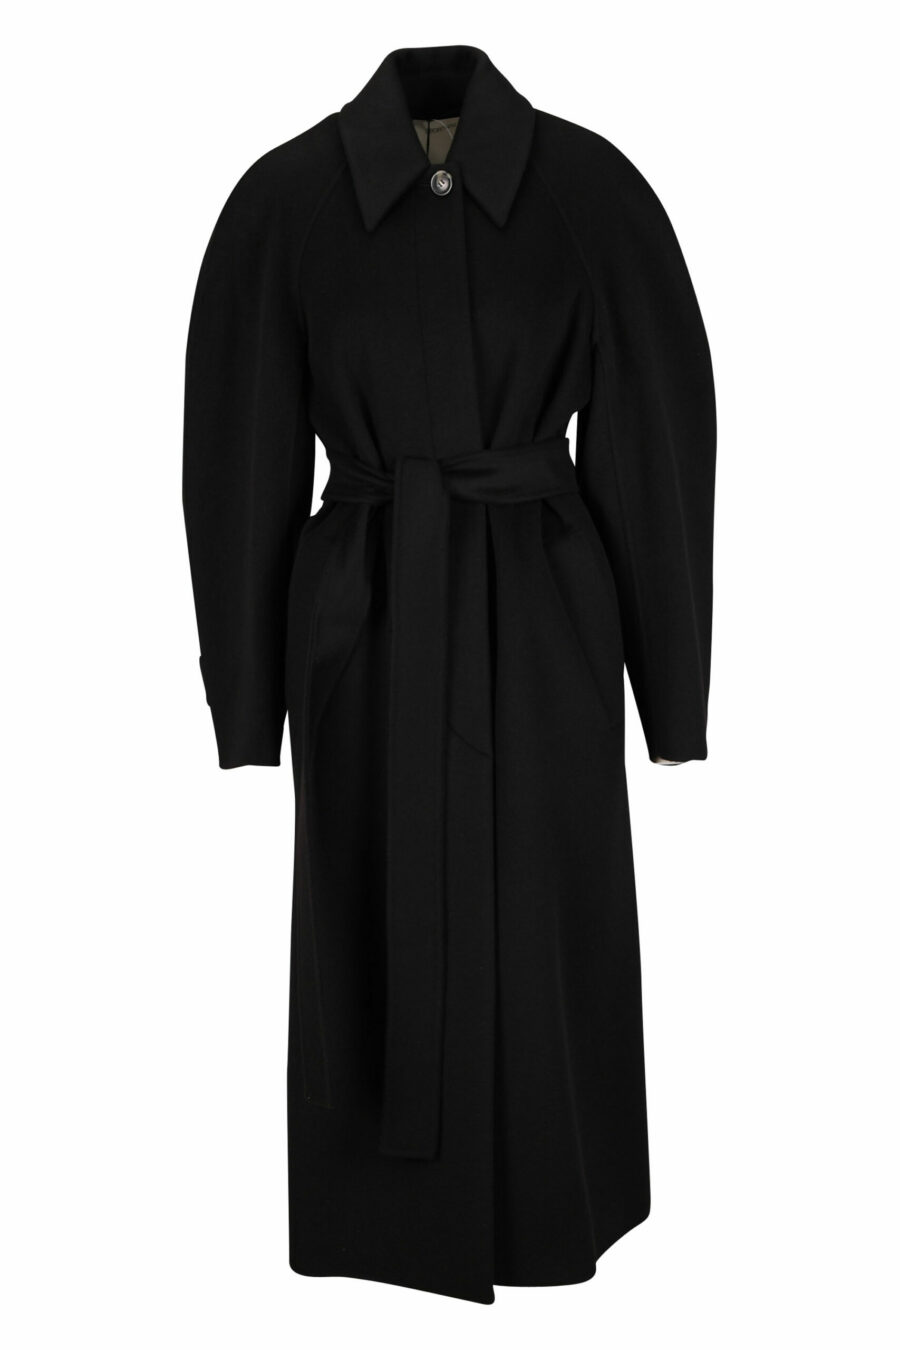 Abrigo negro largo de lana y cashmere - 20110341060042 scaled